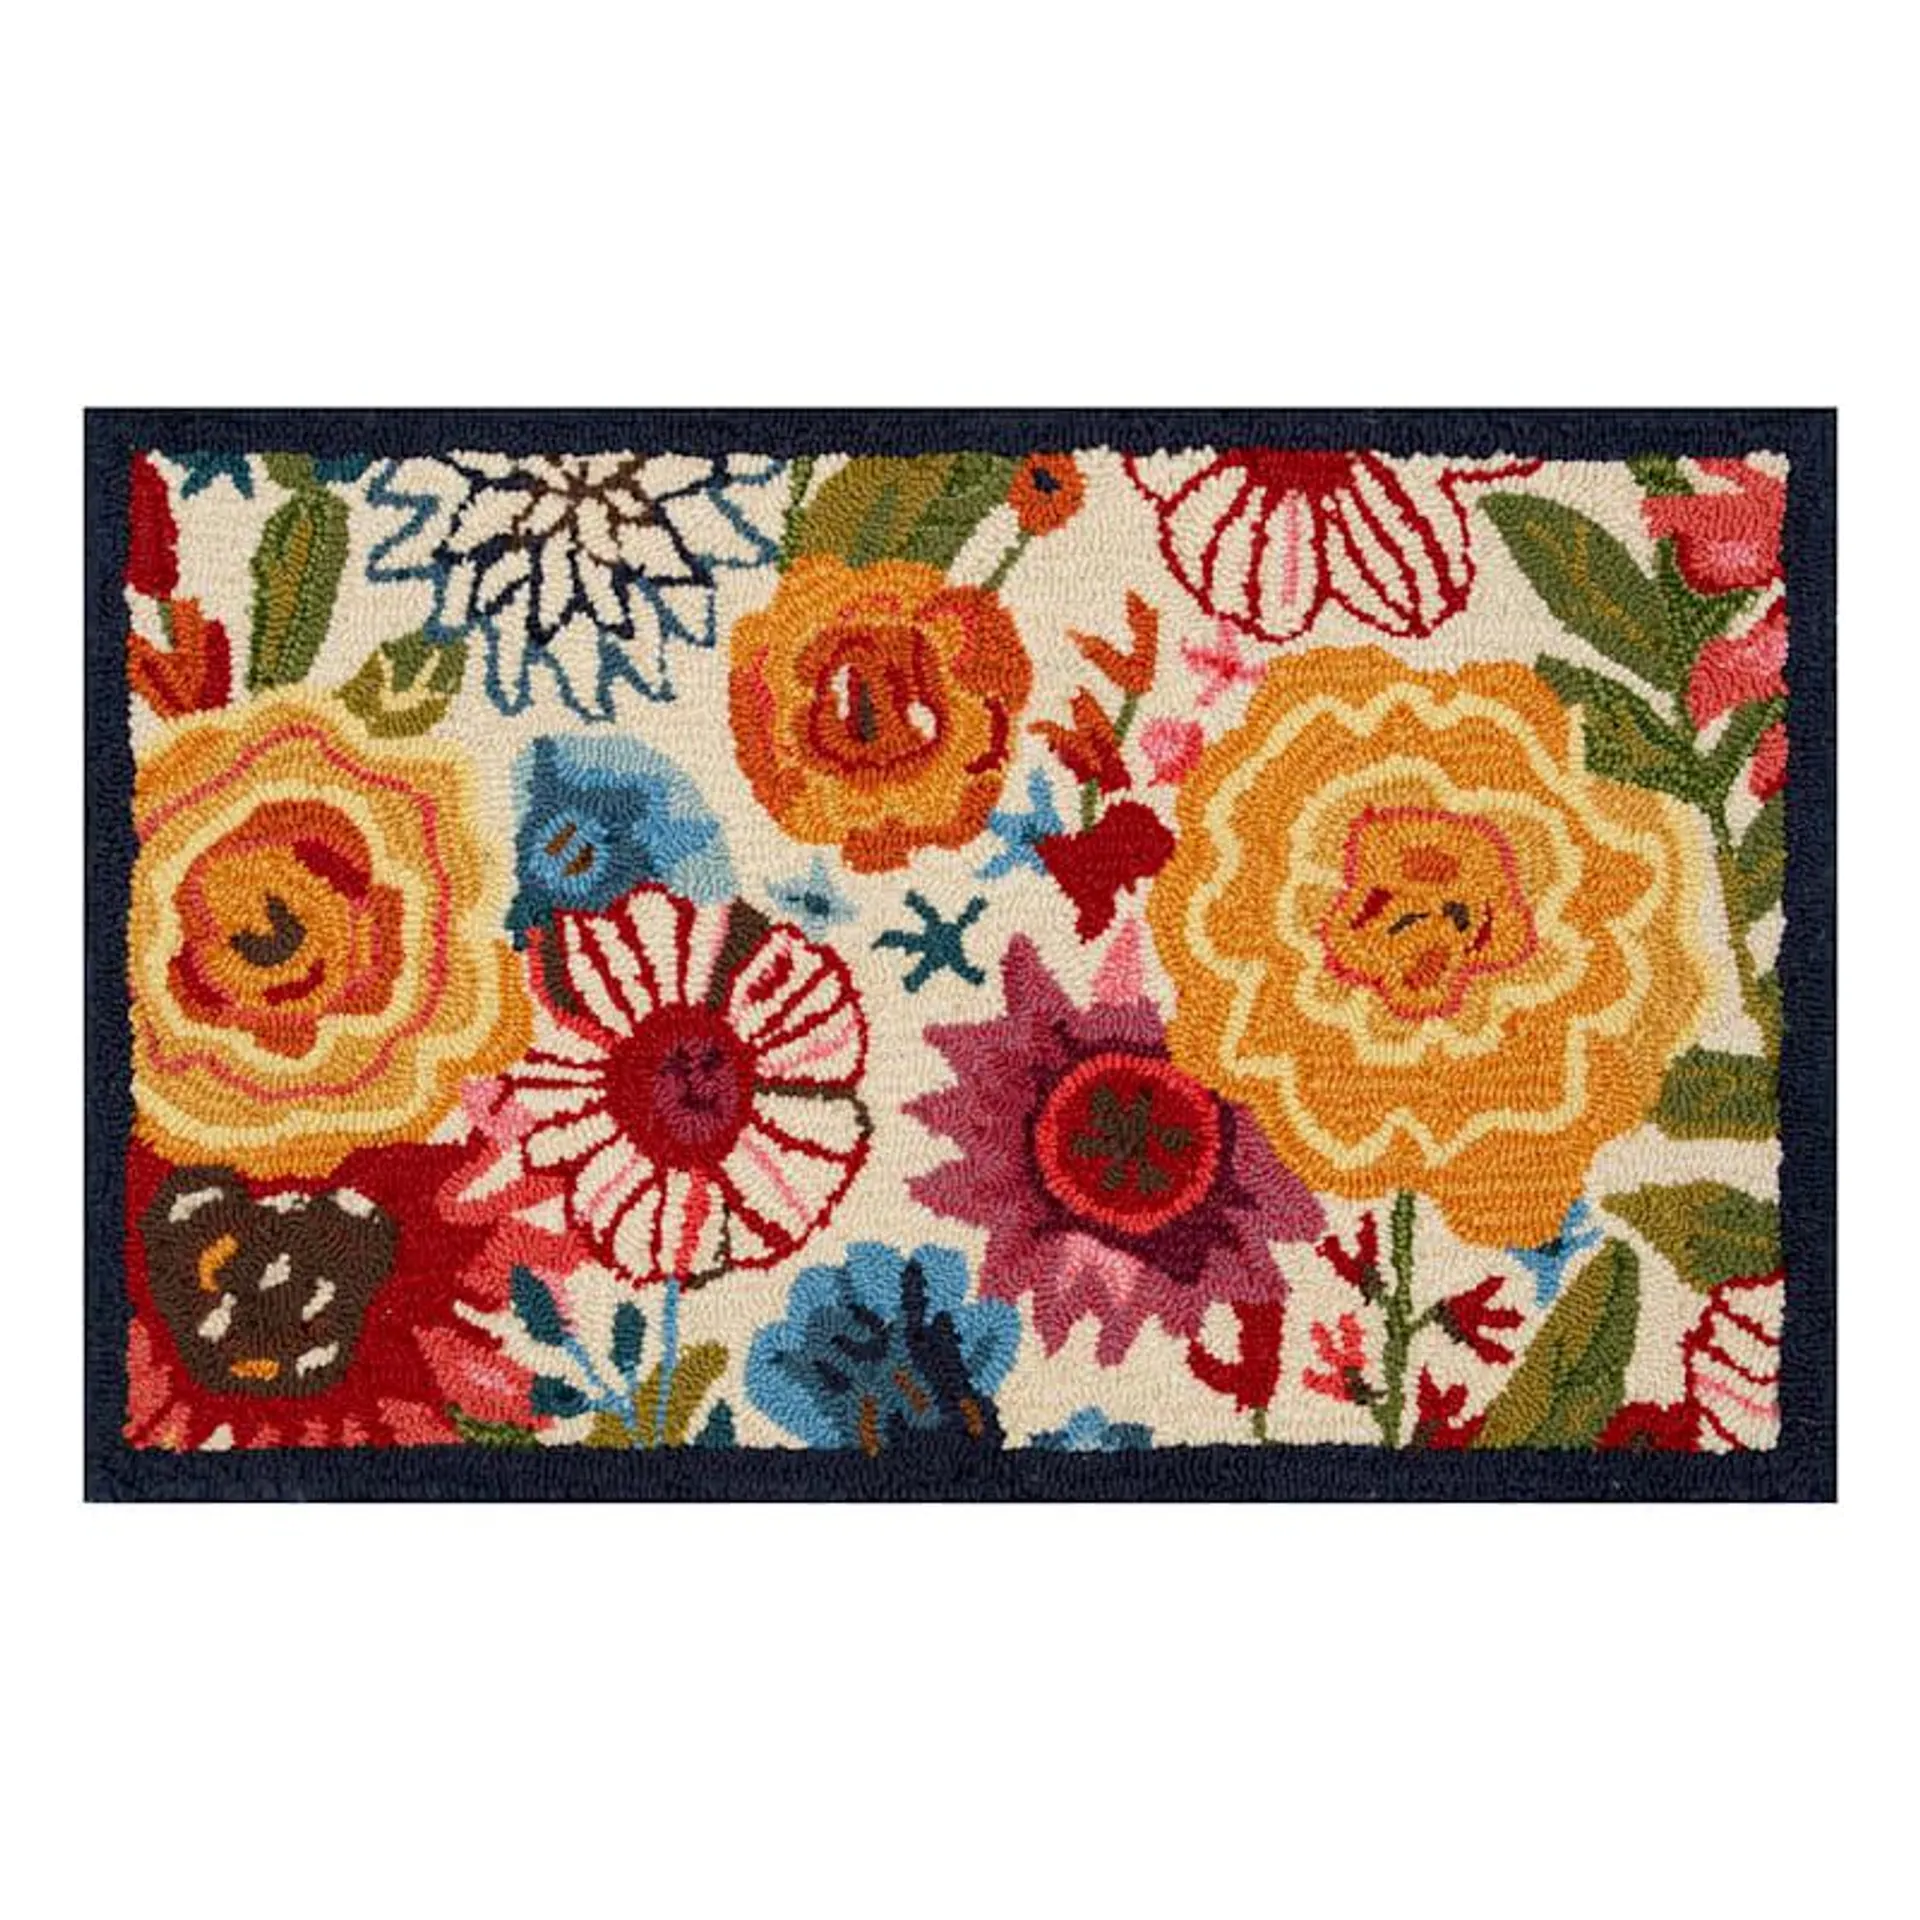 Verona Floral Multicolor Kitchen Mat, 18x30